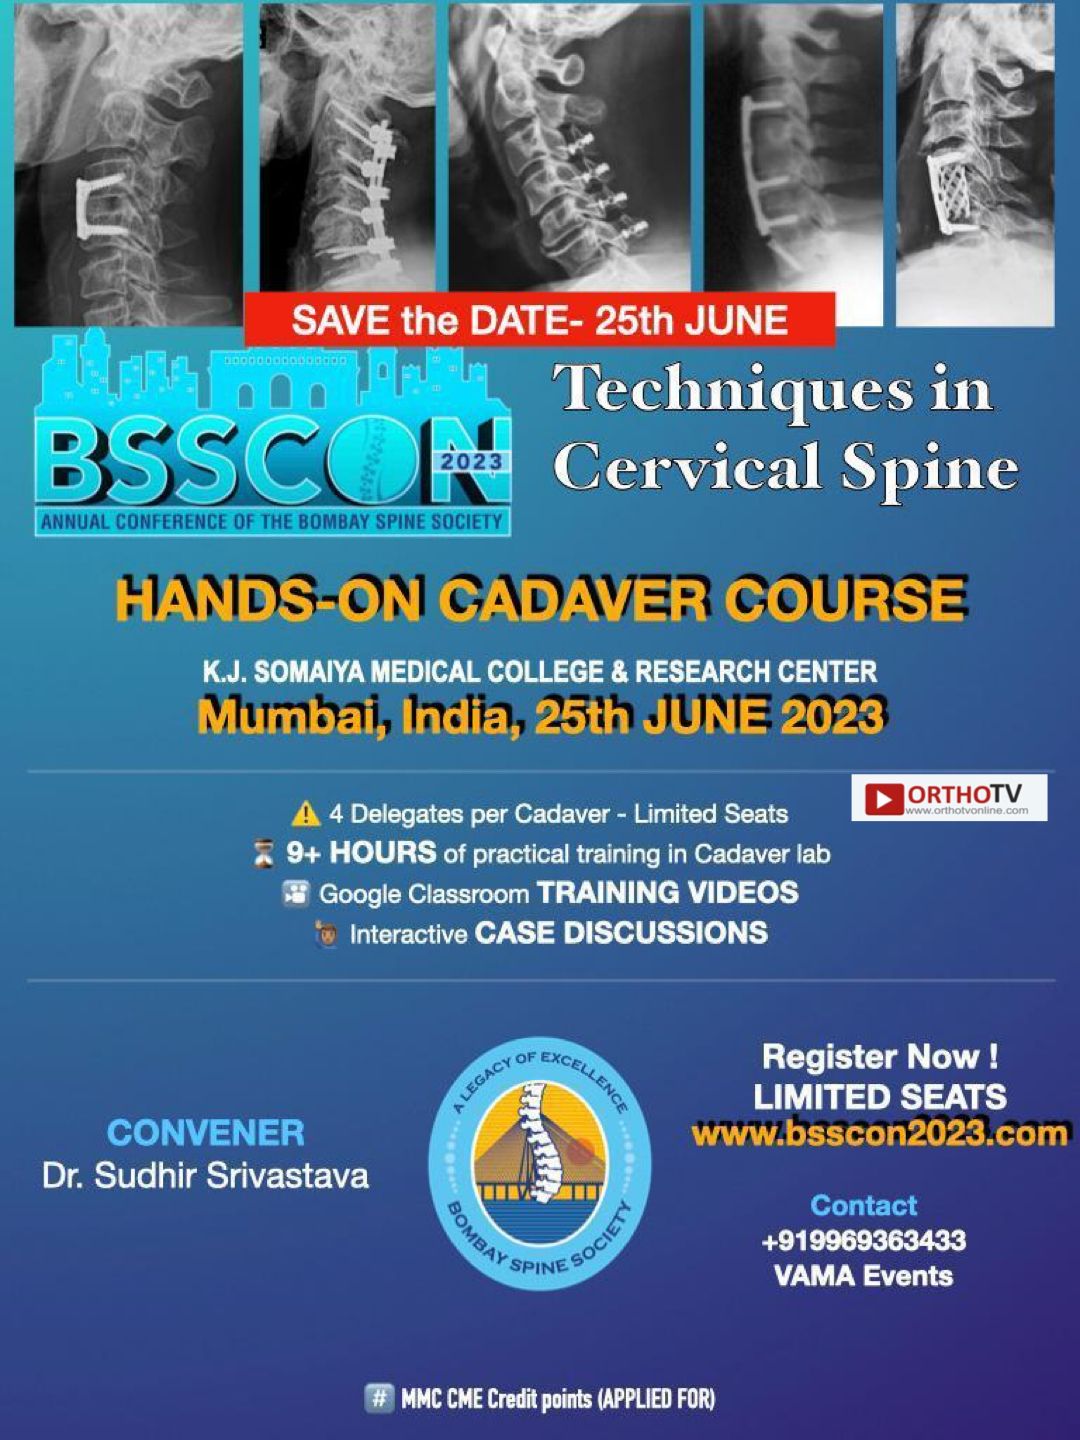 *BSSCON 2023 - Cervical Spine Cadaver Workshop 25th JUNE *